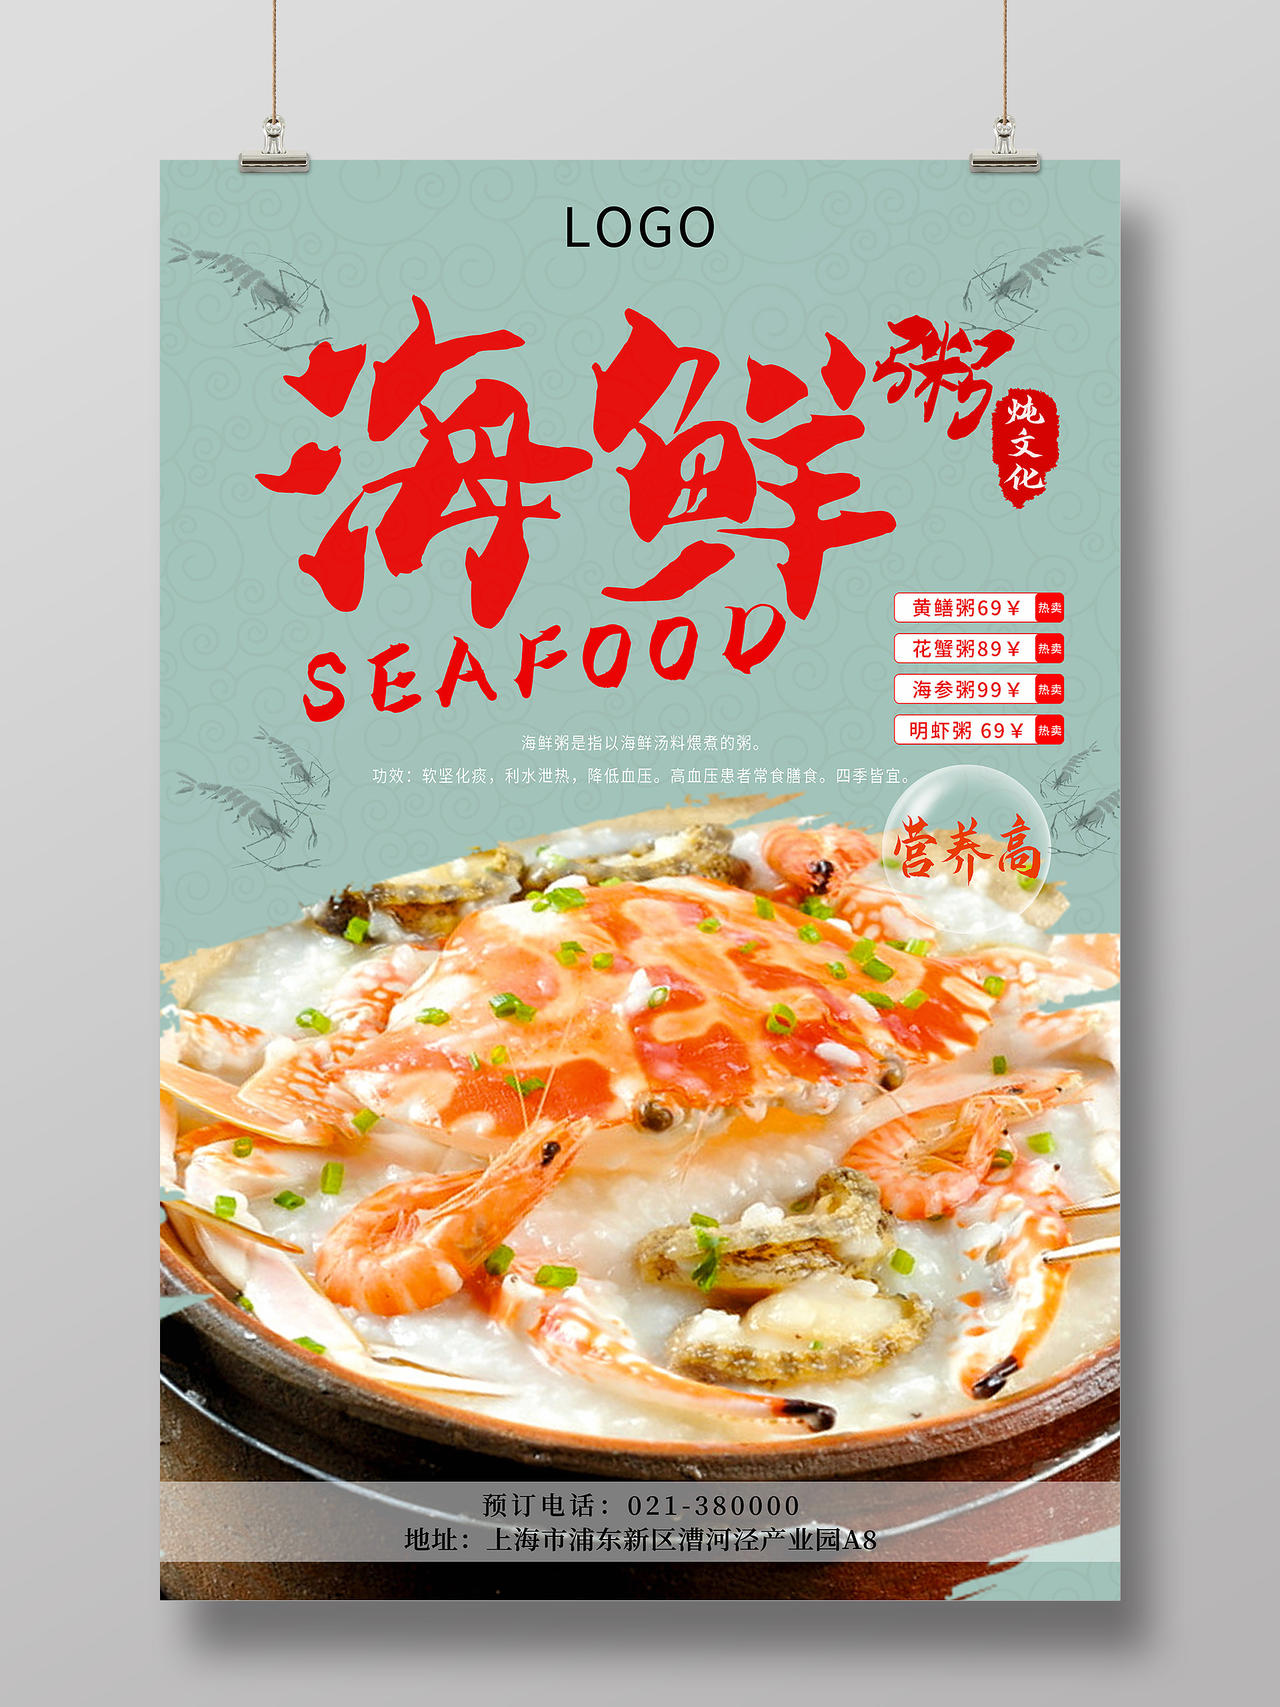 绿色笔触海鲜粥炖文化营养高菜单宣传海报